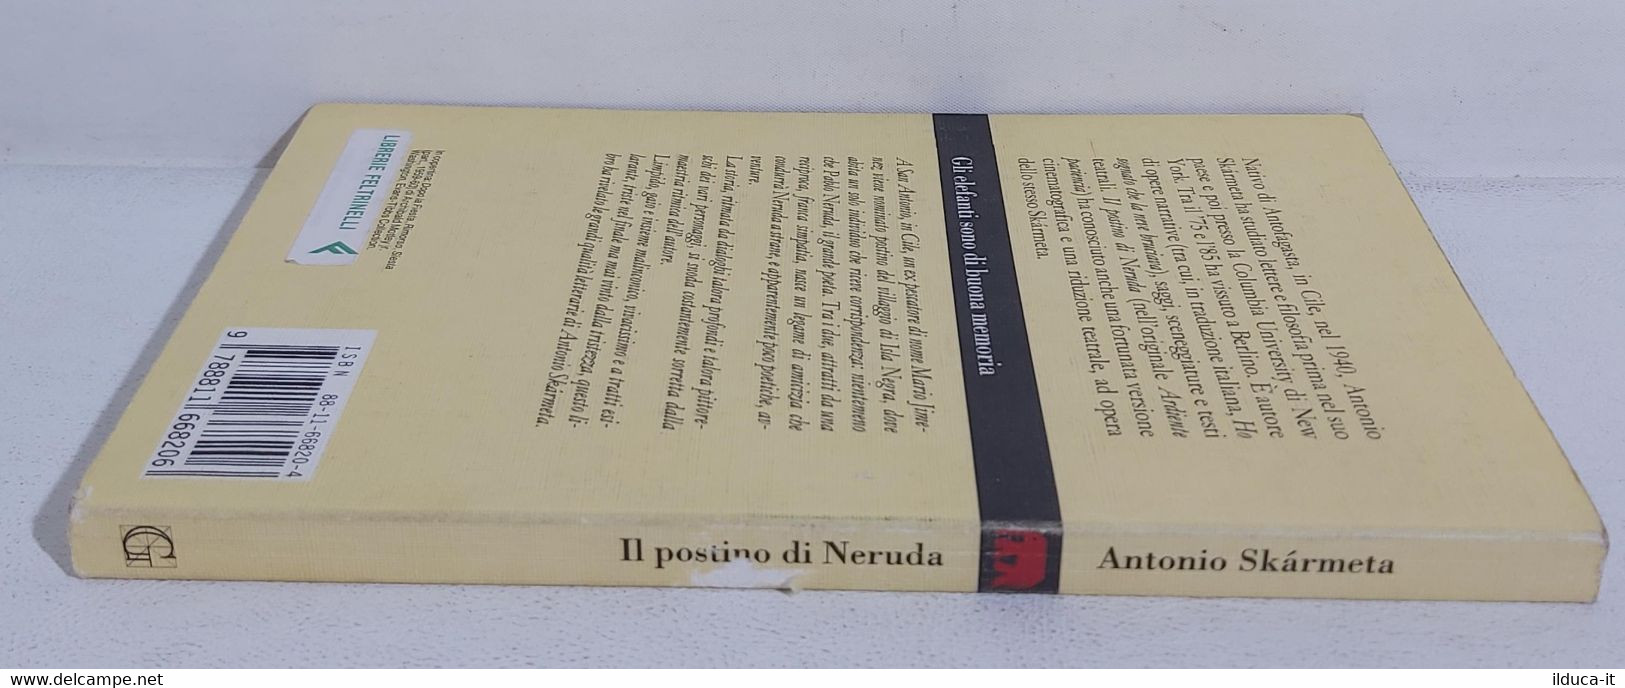 I106604 Antonio Skarmeta - Il Postino Di Neruda - Garzanti 1994 - Nouvelles, Contes